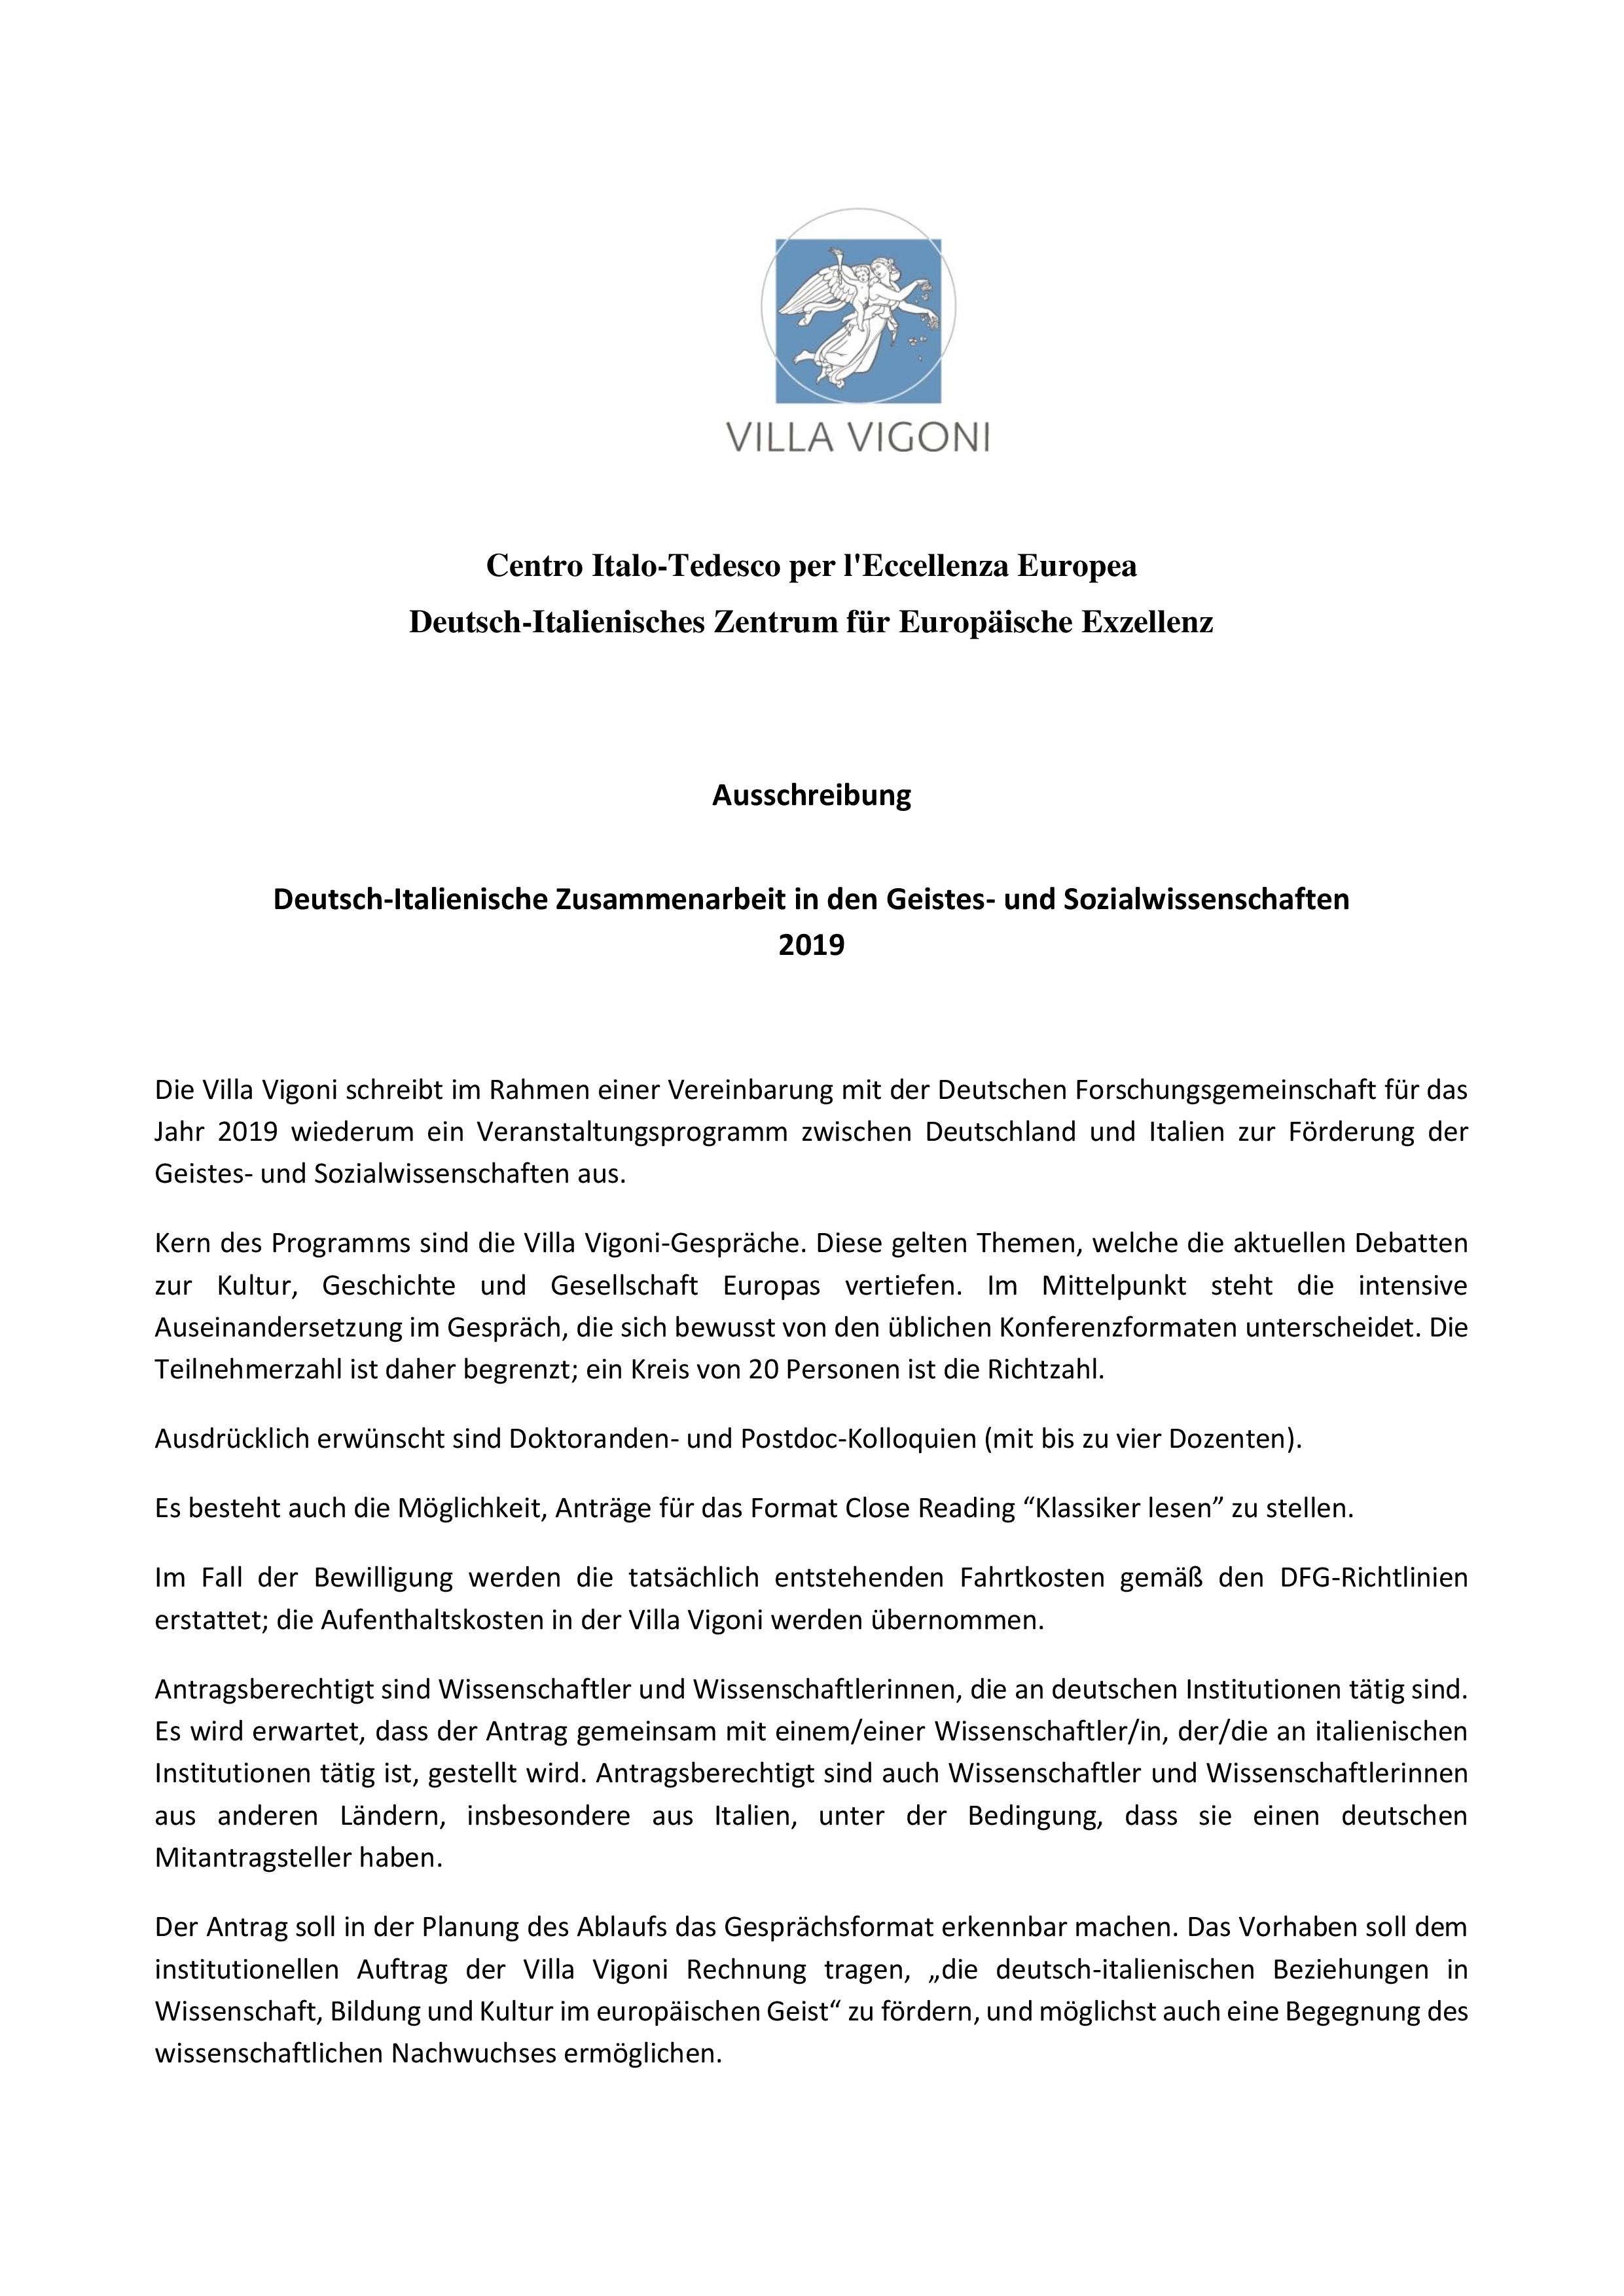 Deutsch-Italienische Zusammenarbeit_2019_AUSSCHREIBUNG-page-001